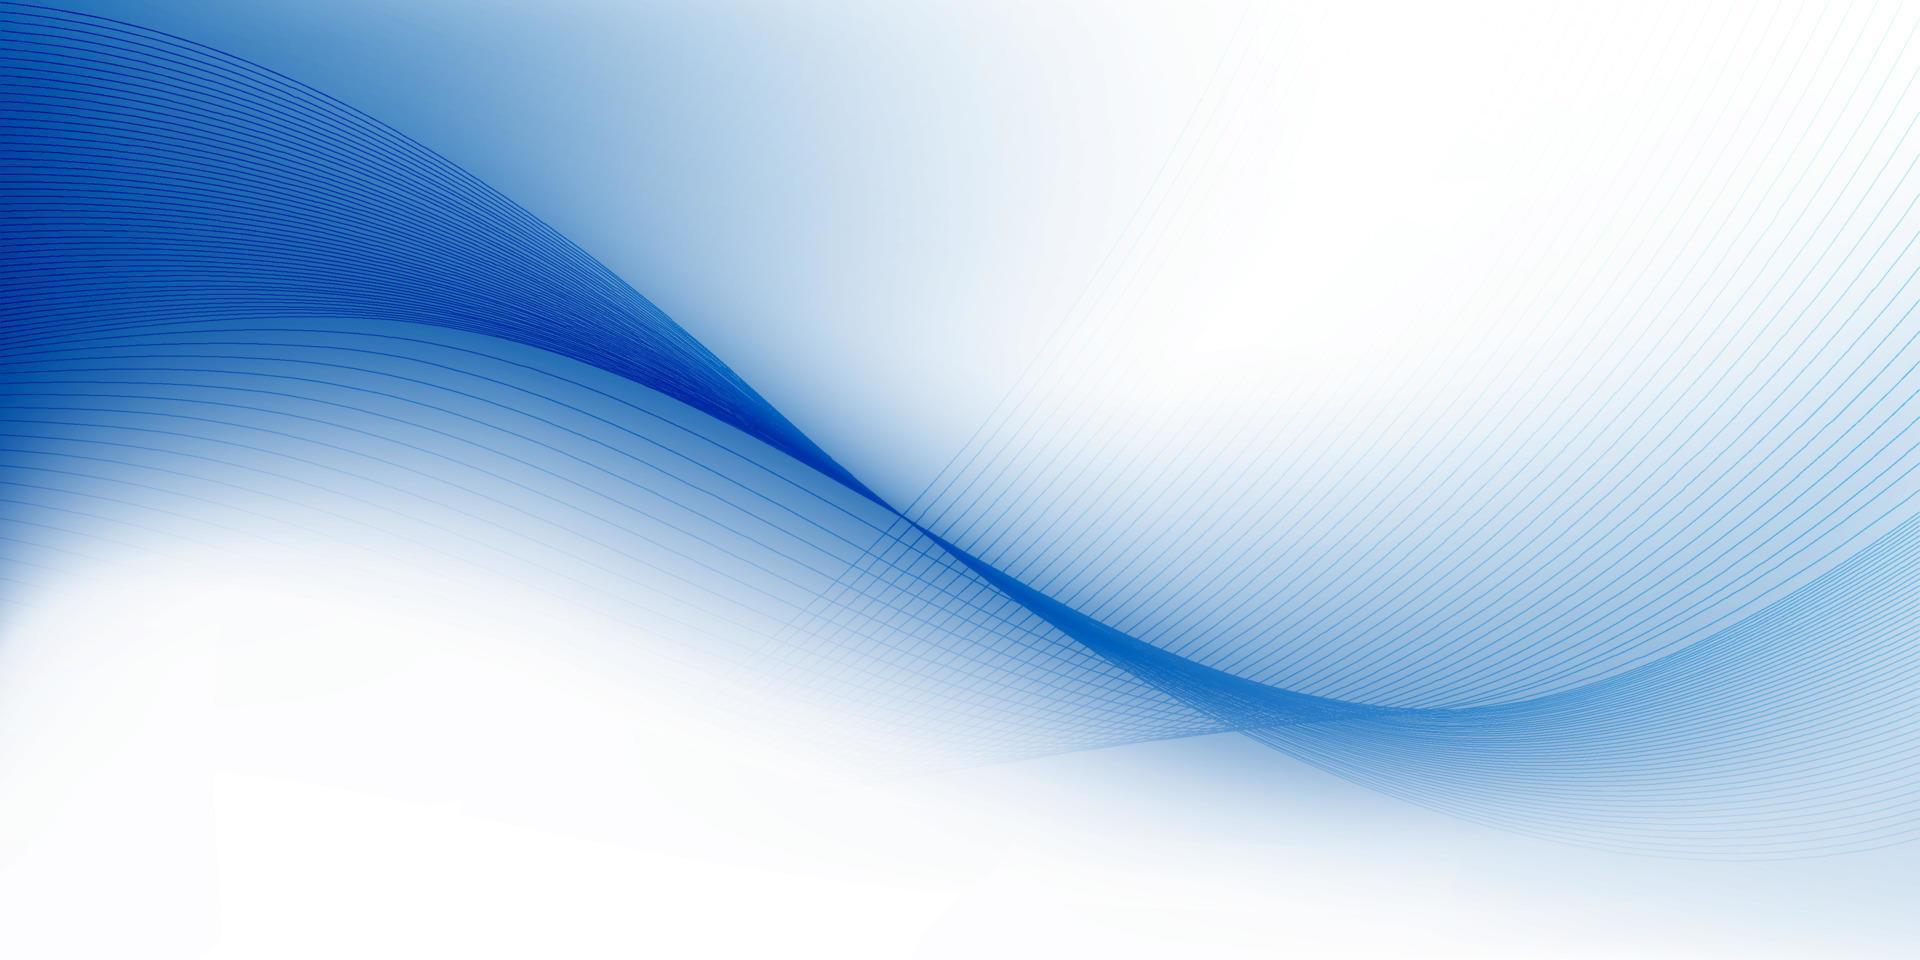 abstrakt vit och blå Färg, modern design Ränder bakgrund med geometrisk runda form, Vinka mönster. vektor illustration.